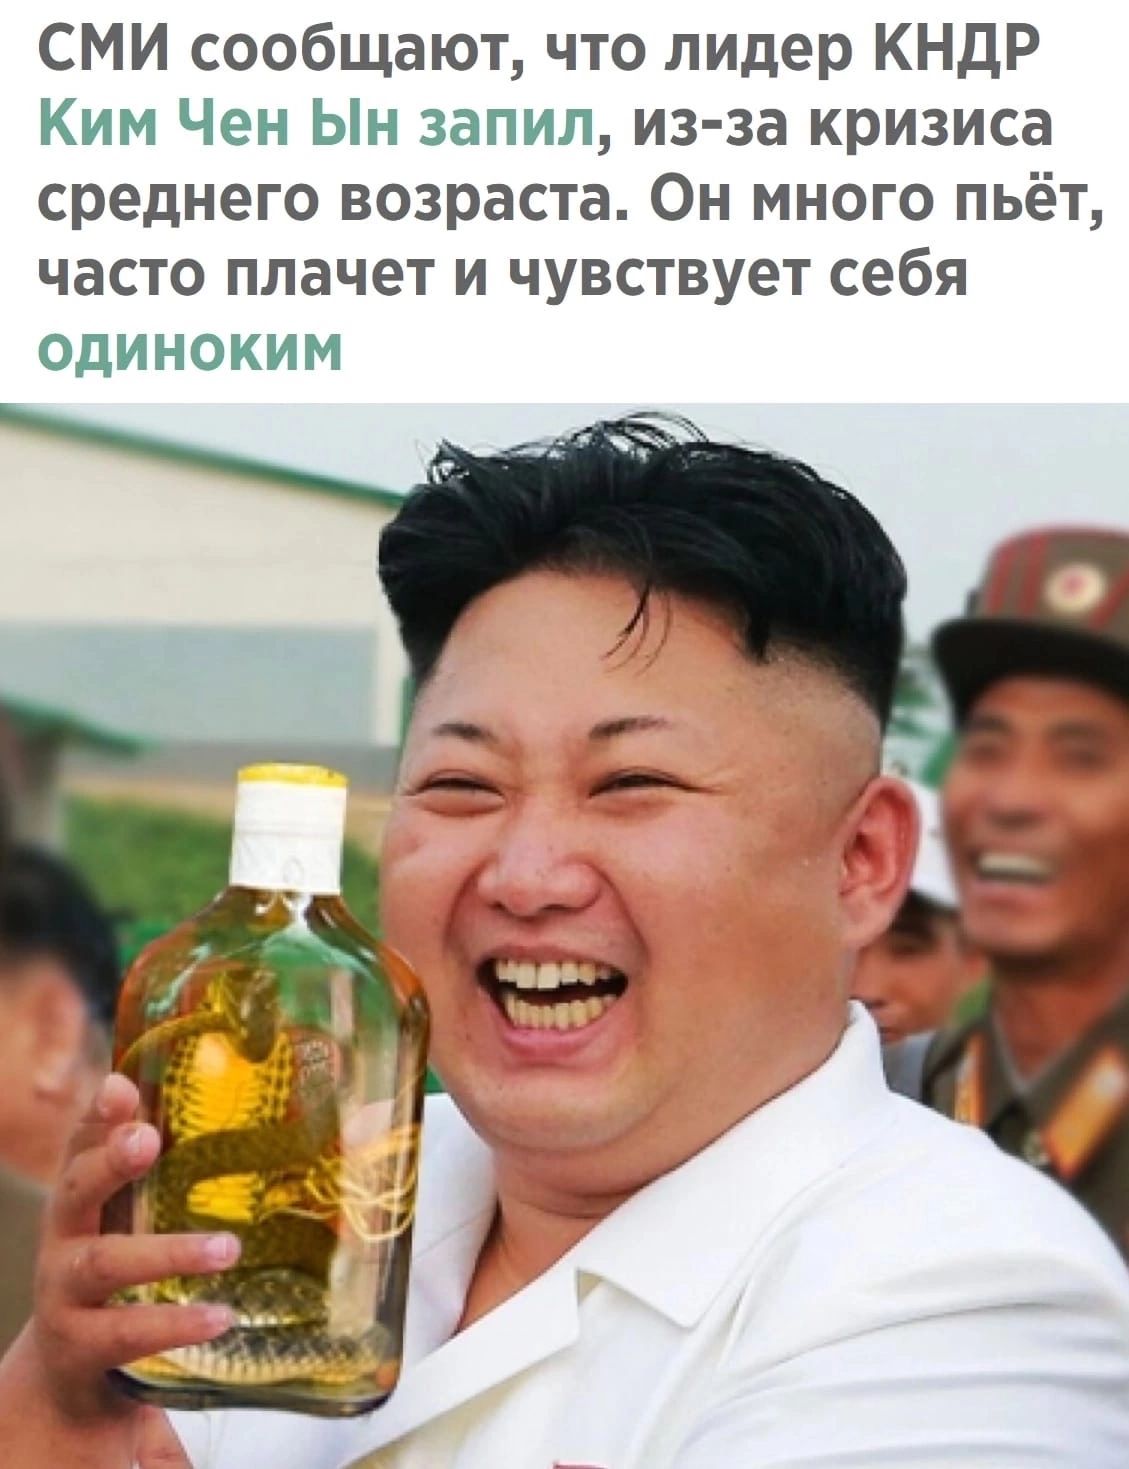 СМИ сообщают что лидер КНДР Ким Чен Ын запил из за кризиса среднего возраста Он много пьёт часто плачет и чувствует себя одиноким